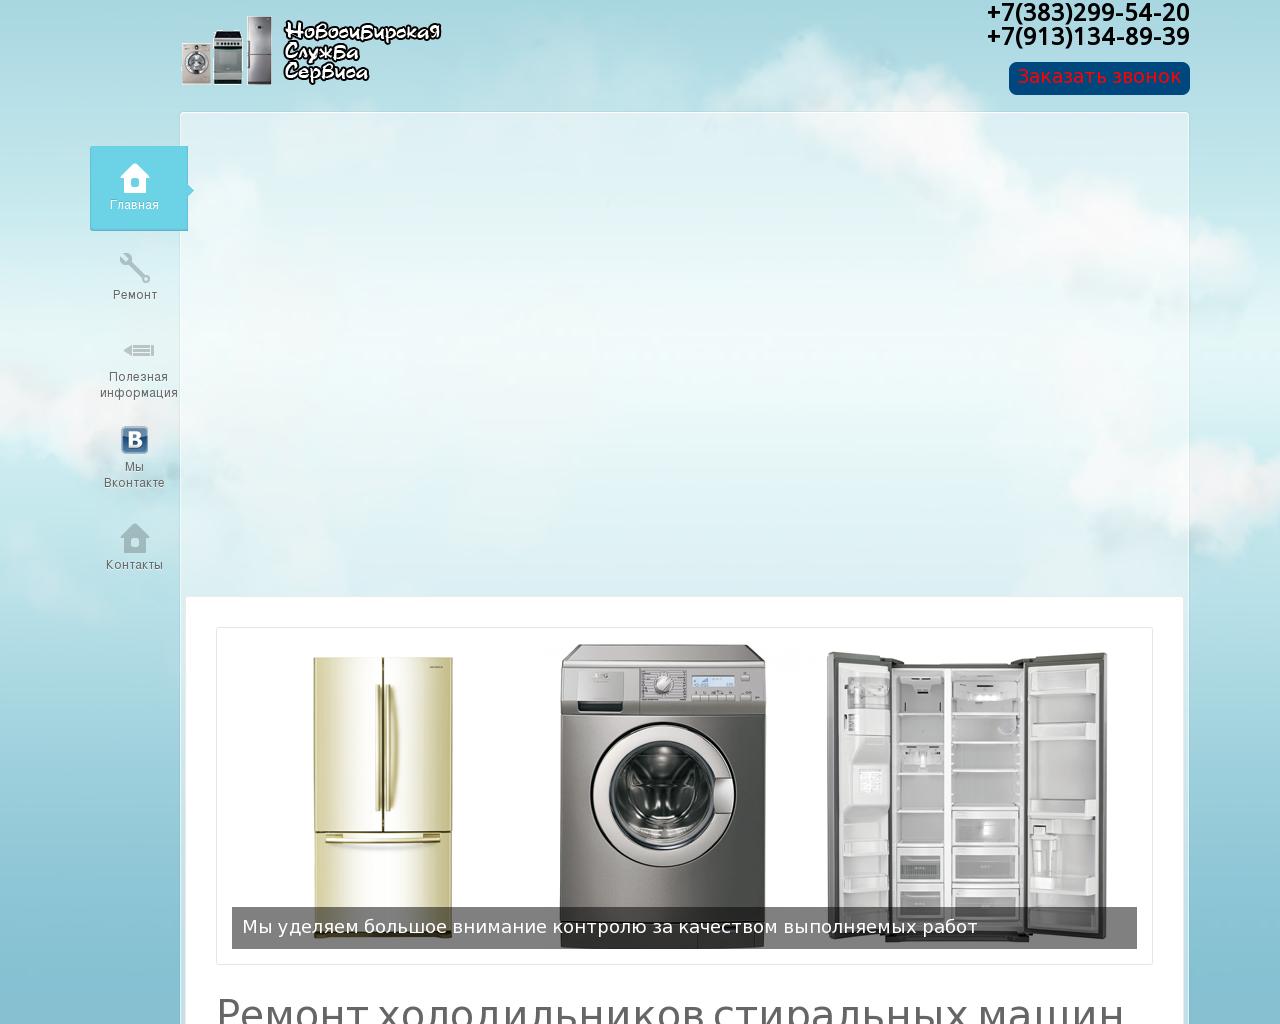 Изображение сайта nss54.ru в разрешении 1280x1024